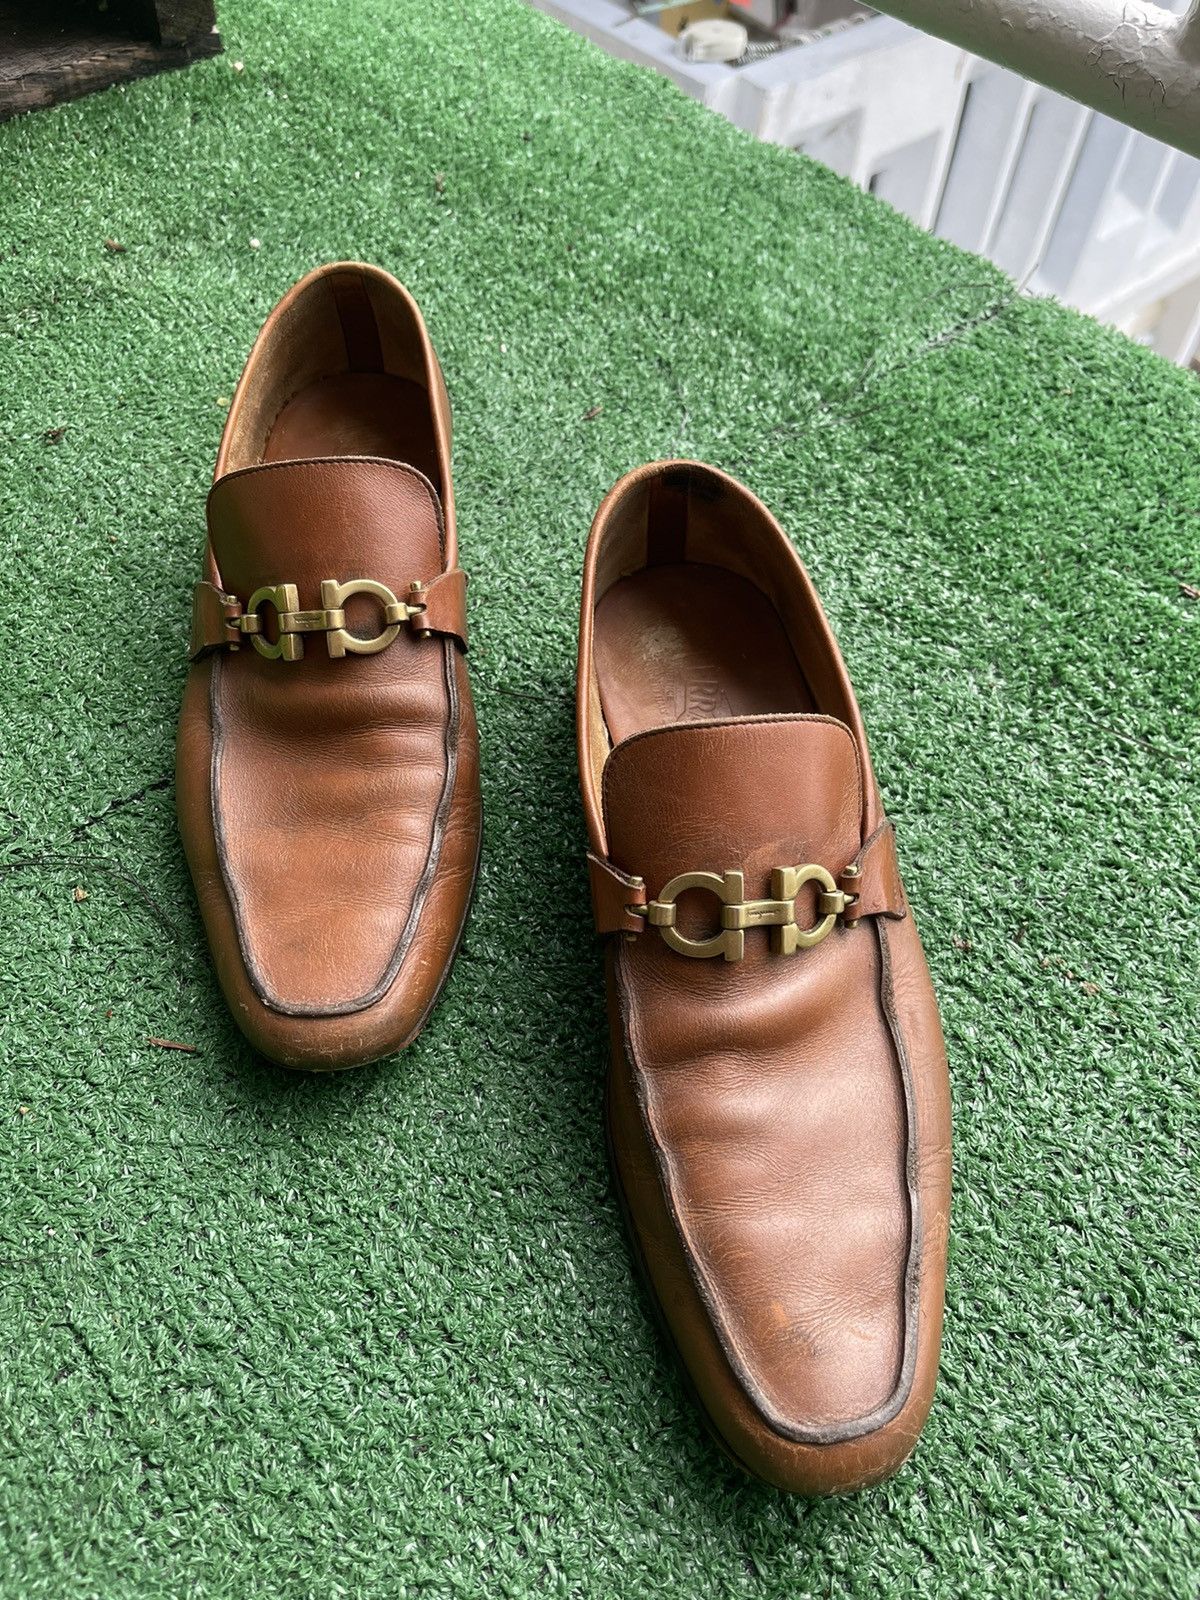 Salvatore Ferragamo Ferragamo Leather Shoe Size US 9 / EU 42 - 1 Preview